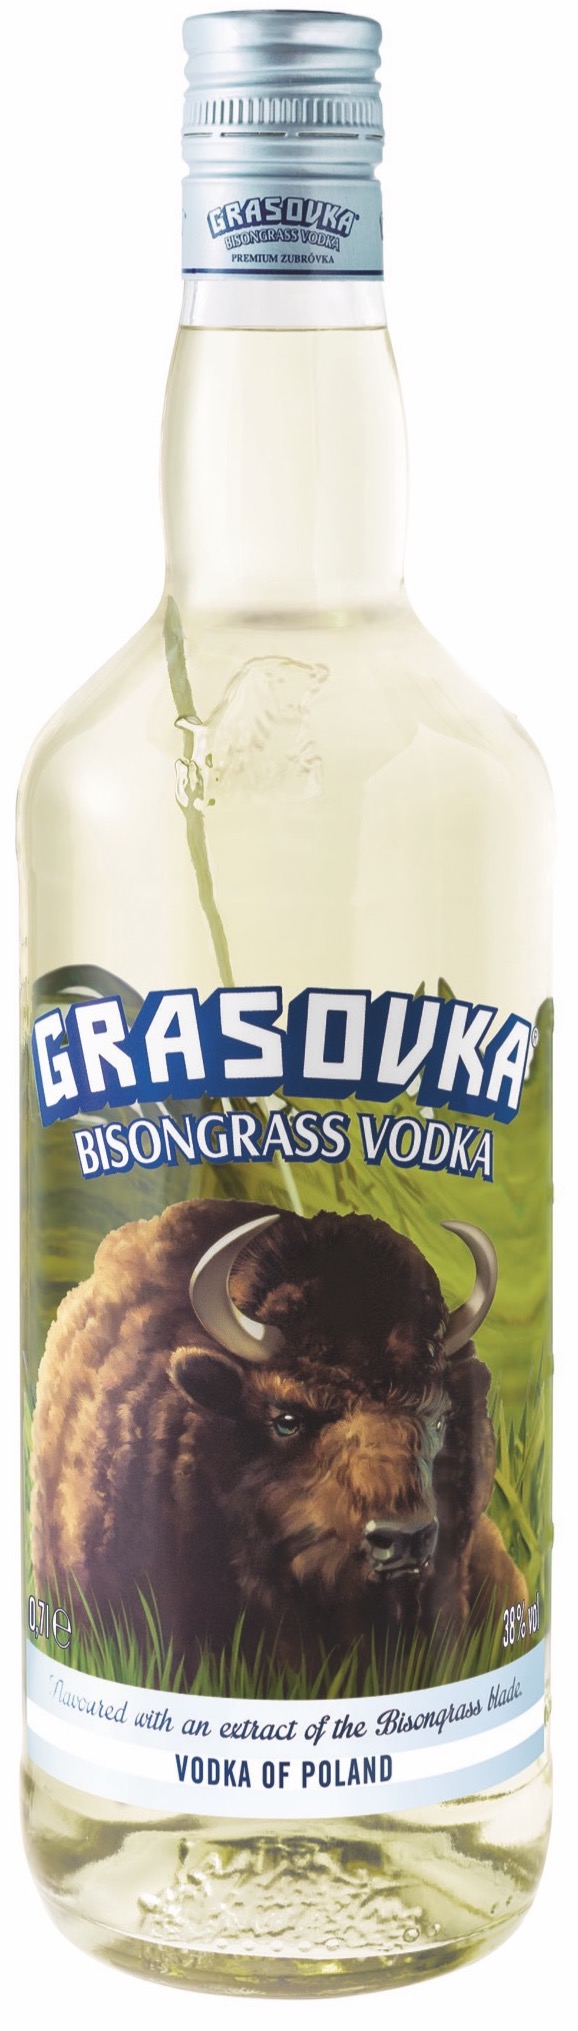 Grasovka Bisongrass Vodka 38 % vol. 0,5L